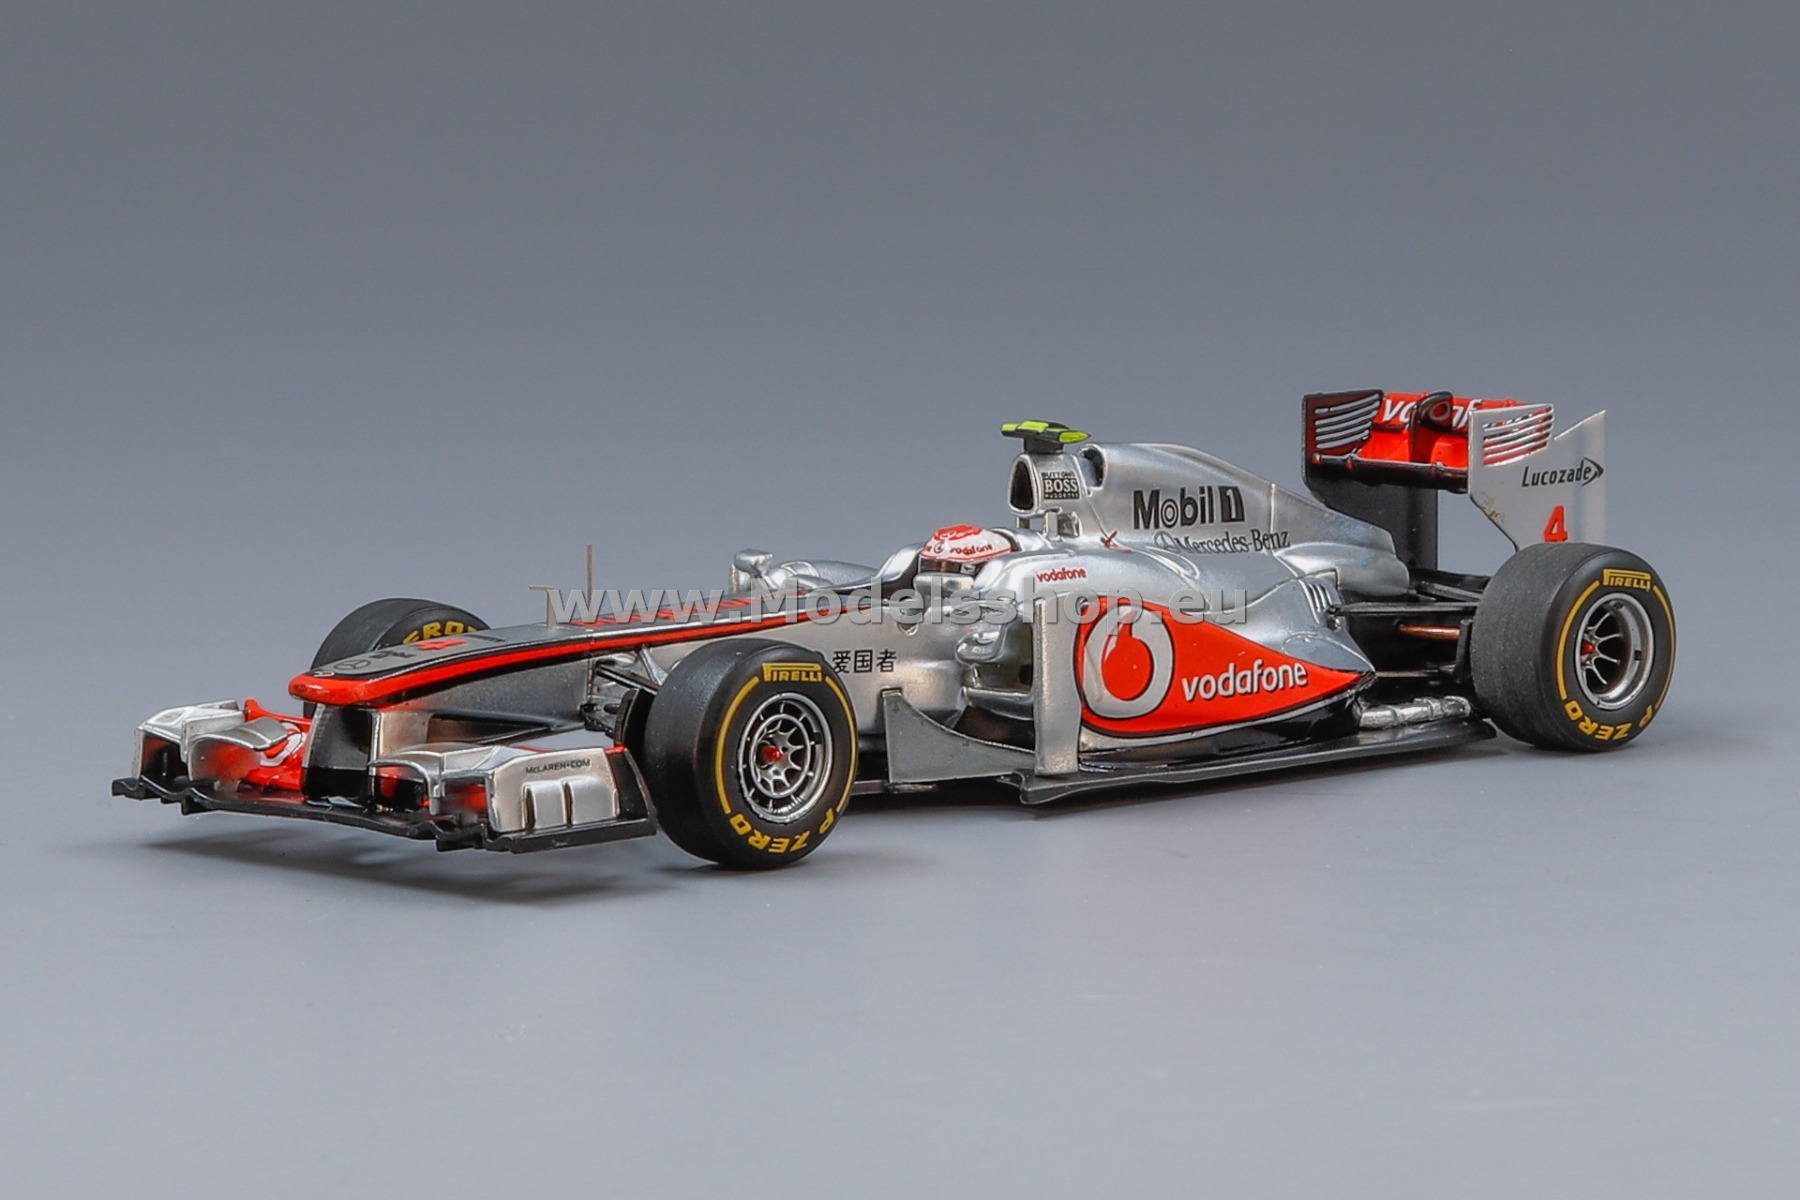 Spark SJ007 Vodafone McLaren Mercedes MP4-26 No. 4 Japan GP Winner 2011, Jenson Button - Limited edition 1500pcs